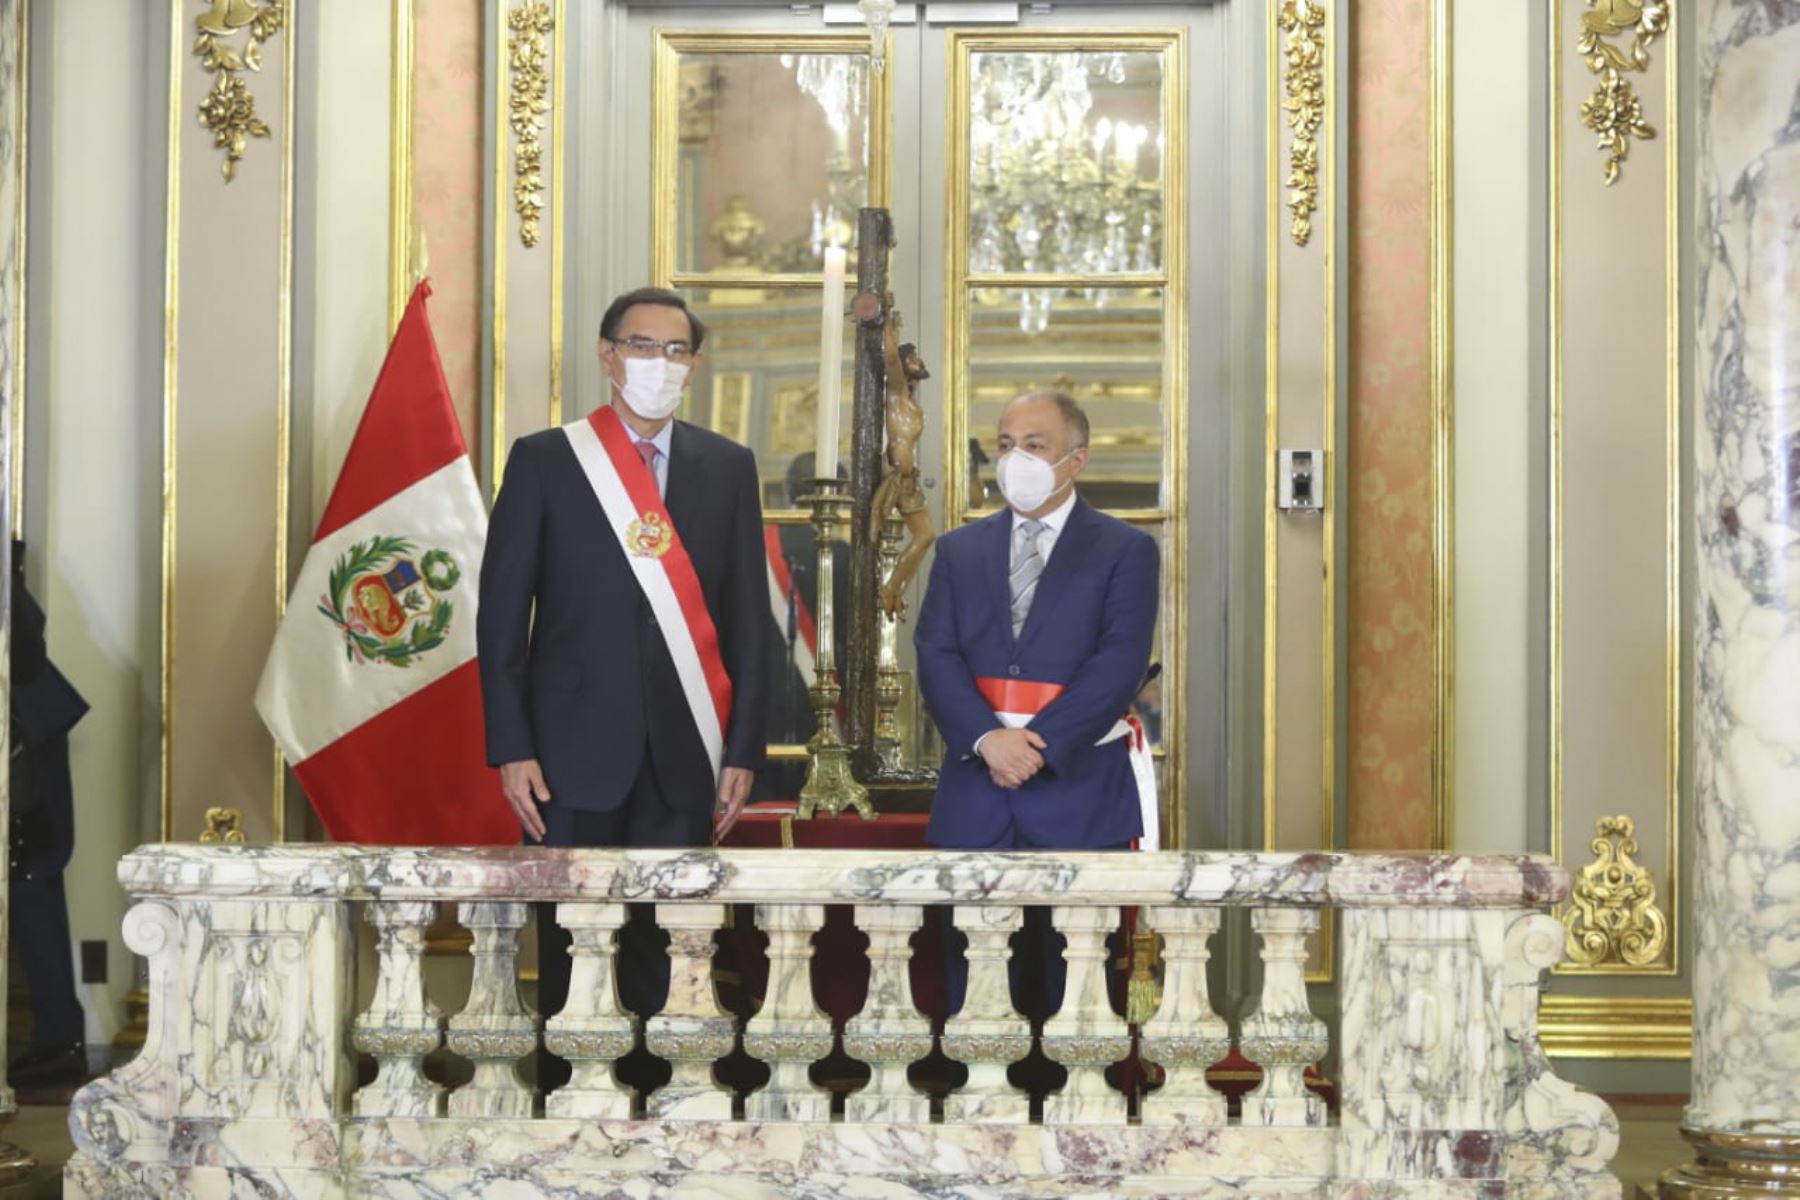 El presidente de la República, Martín Vizcarra, toma juramento a Javier Palacios Gallegos como ministro de trabajo. Foto: ANDINA/ Prensa Presidencia